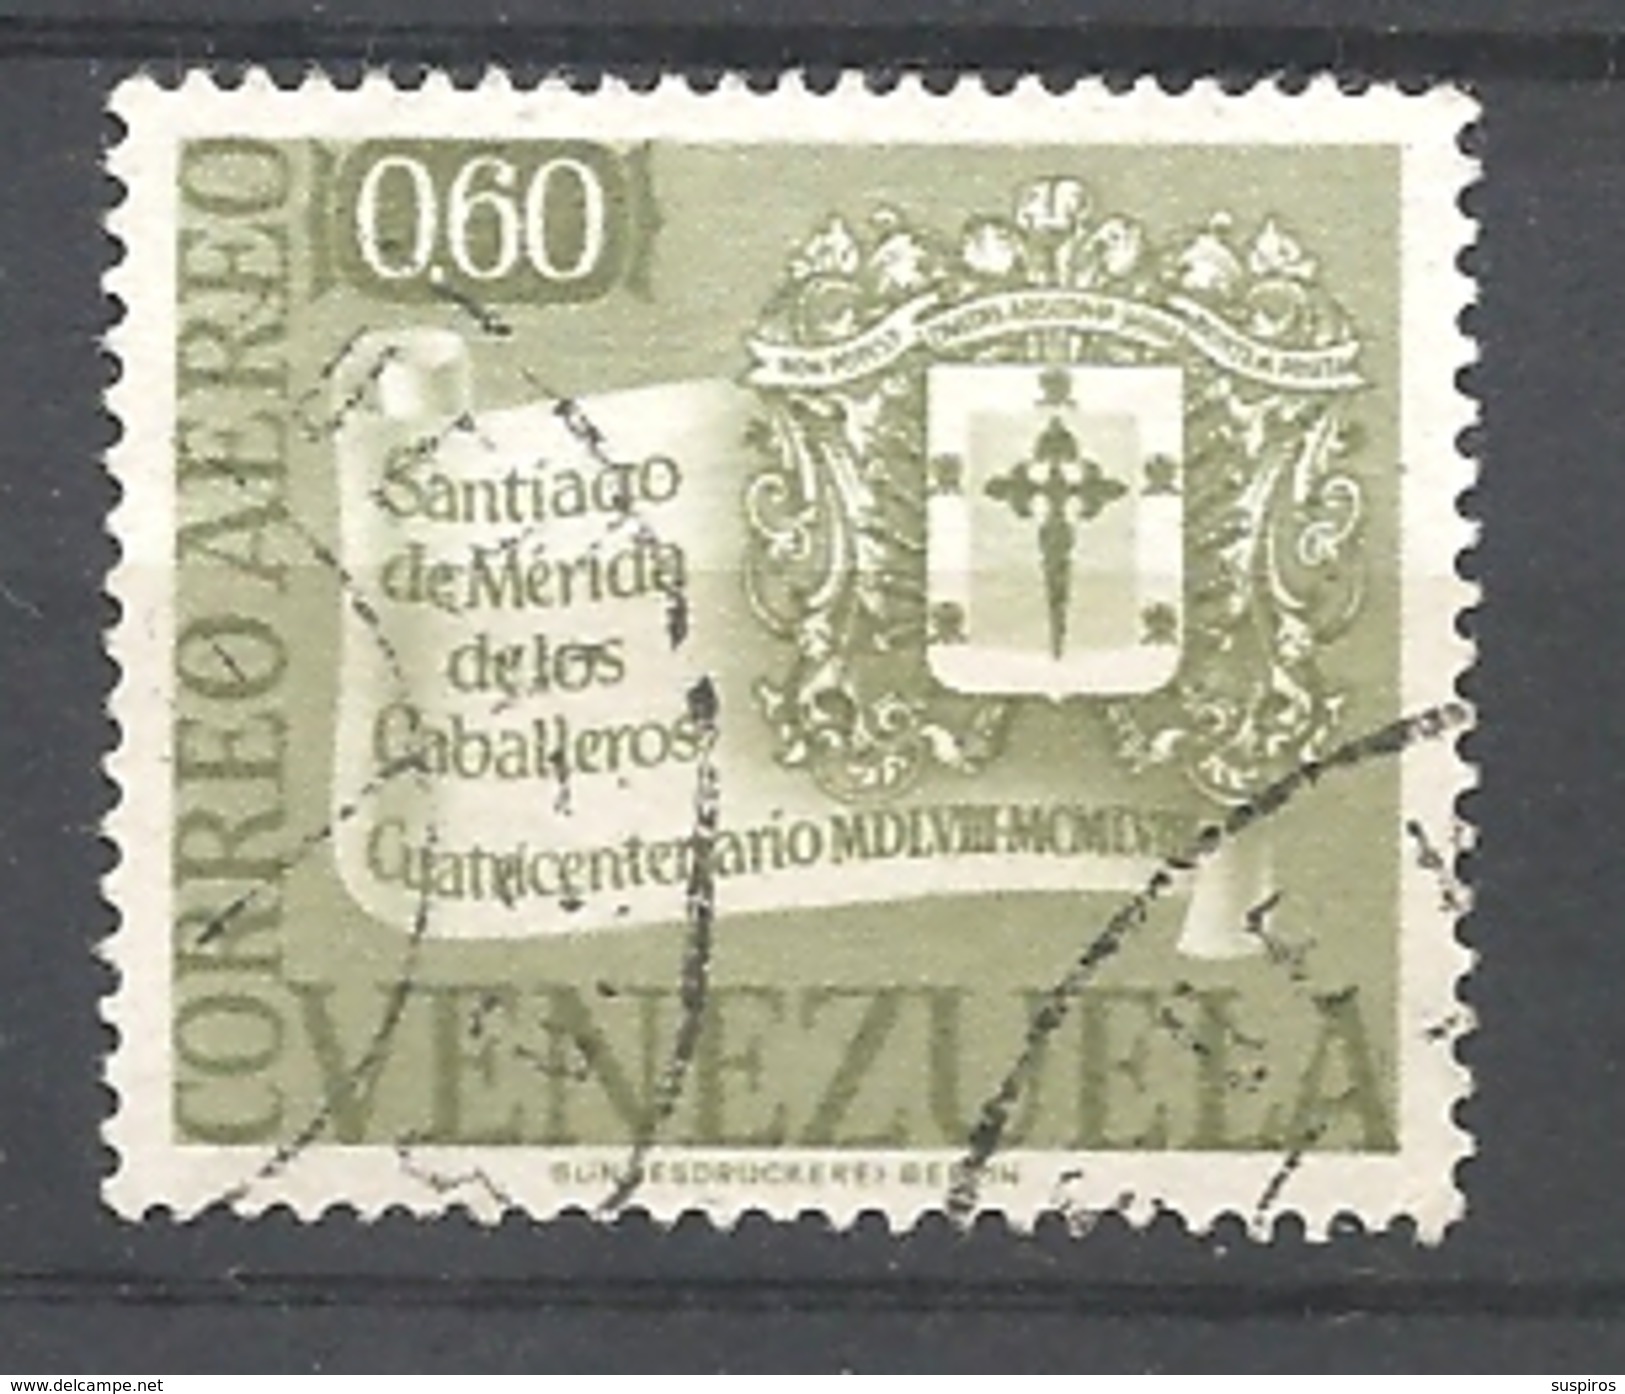 VENEZUELA   1958 Airmail - The 400th Anniversary Of Santiago De Merida De Los Caballeros     USED - Venezuela